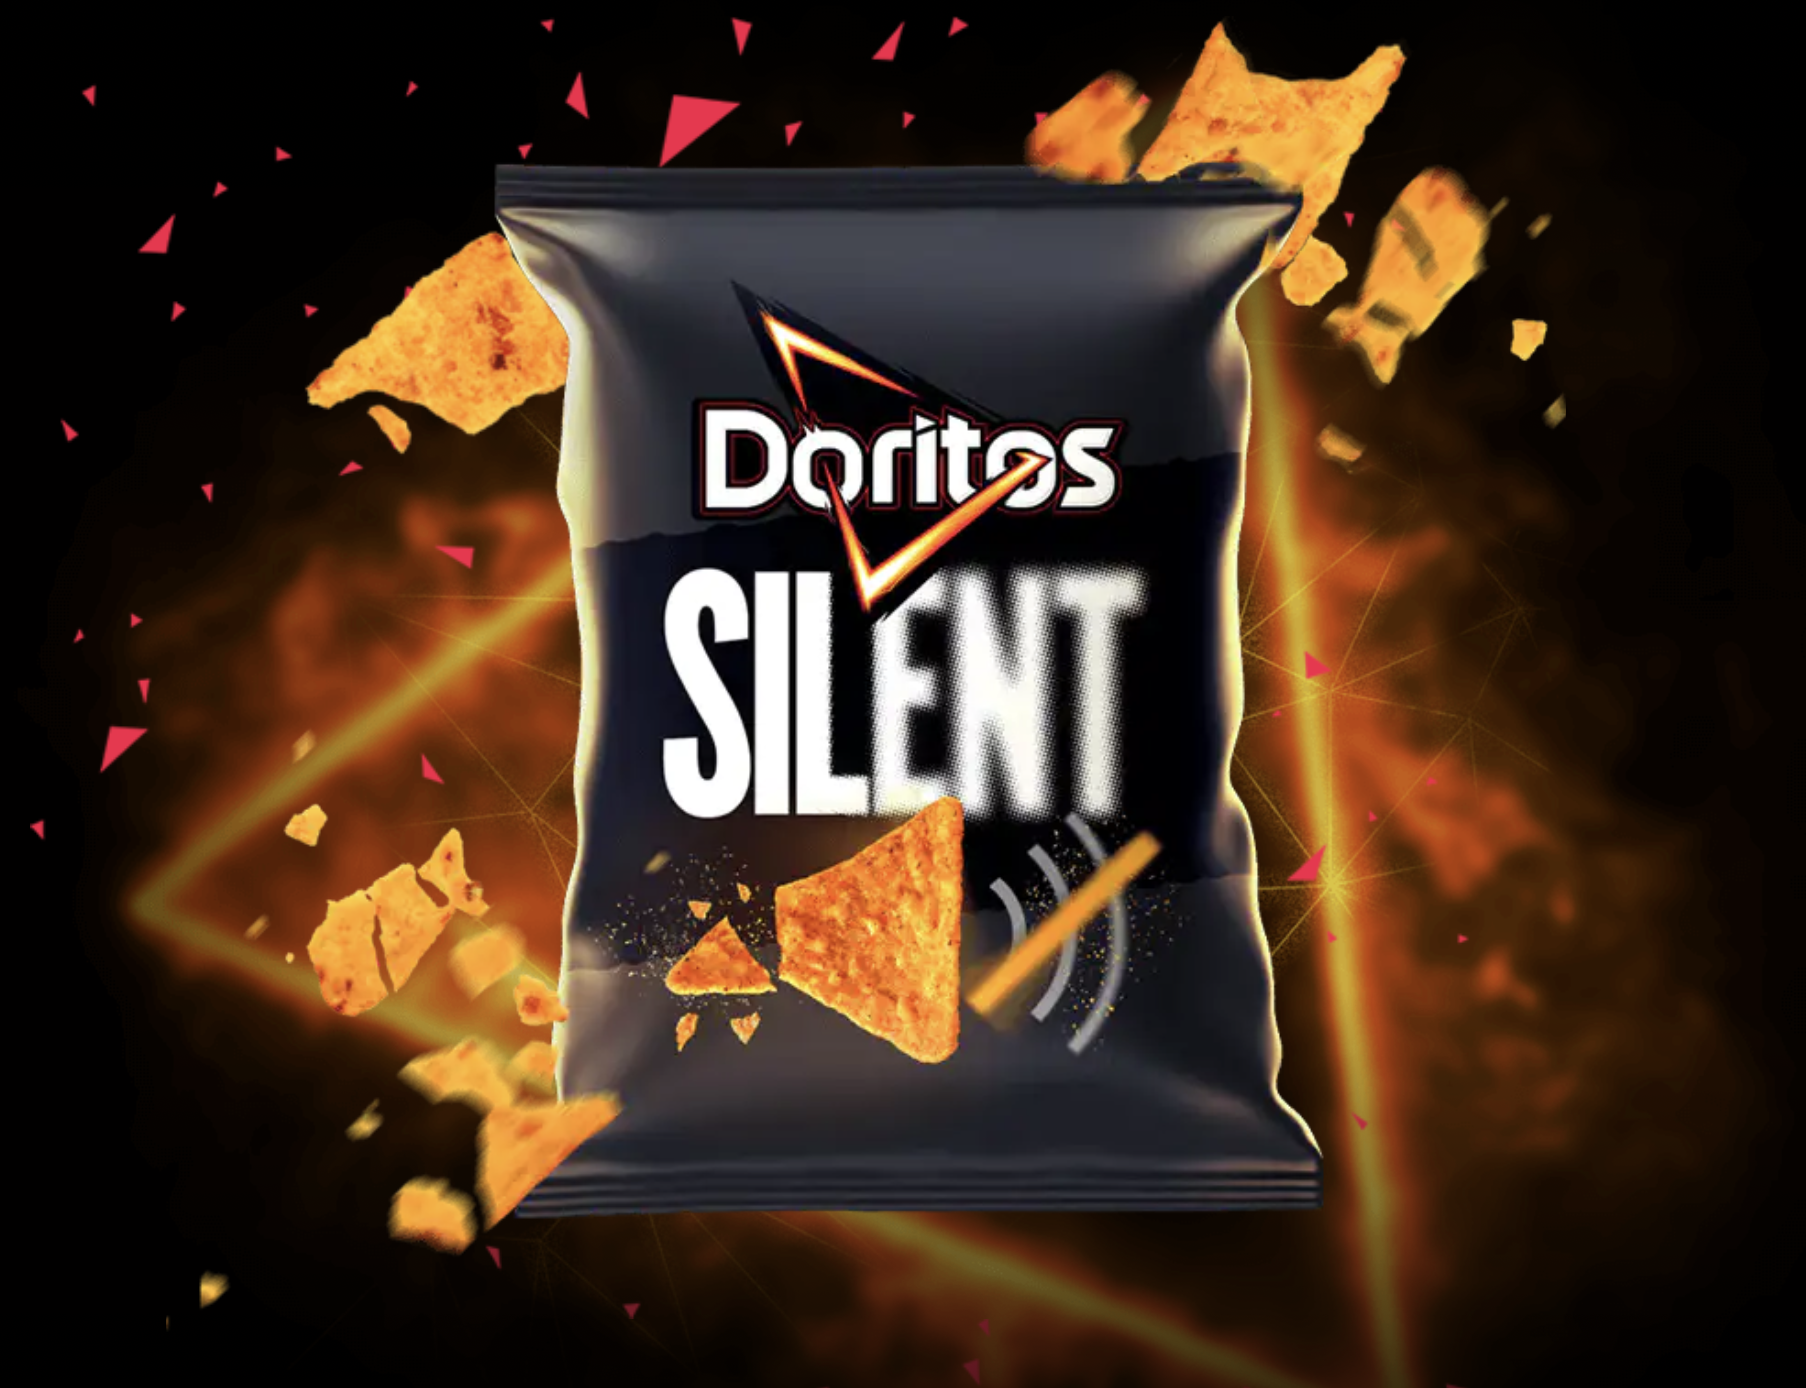 Doritos Silent logo